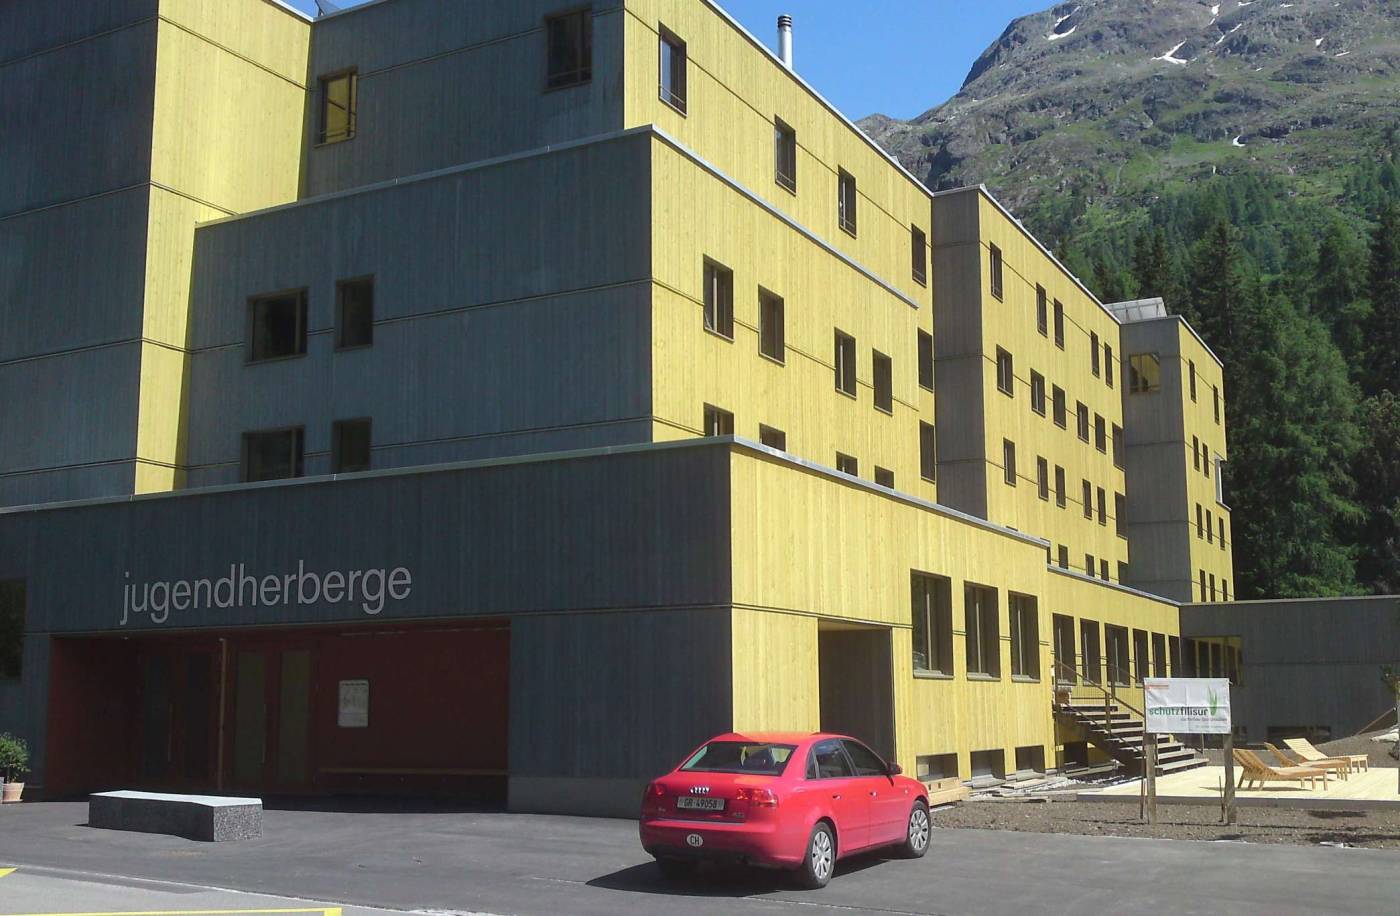 Umbau Jugendherberge, St. Moritz, Projektierung, Ausschreibung und Realisierung:, Tragstruktur in Massiv-, Holz- und Stahlbau